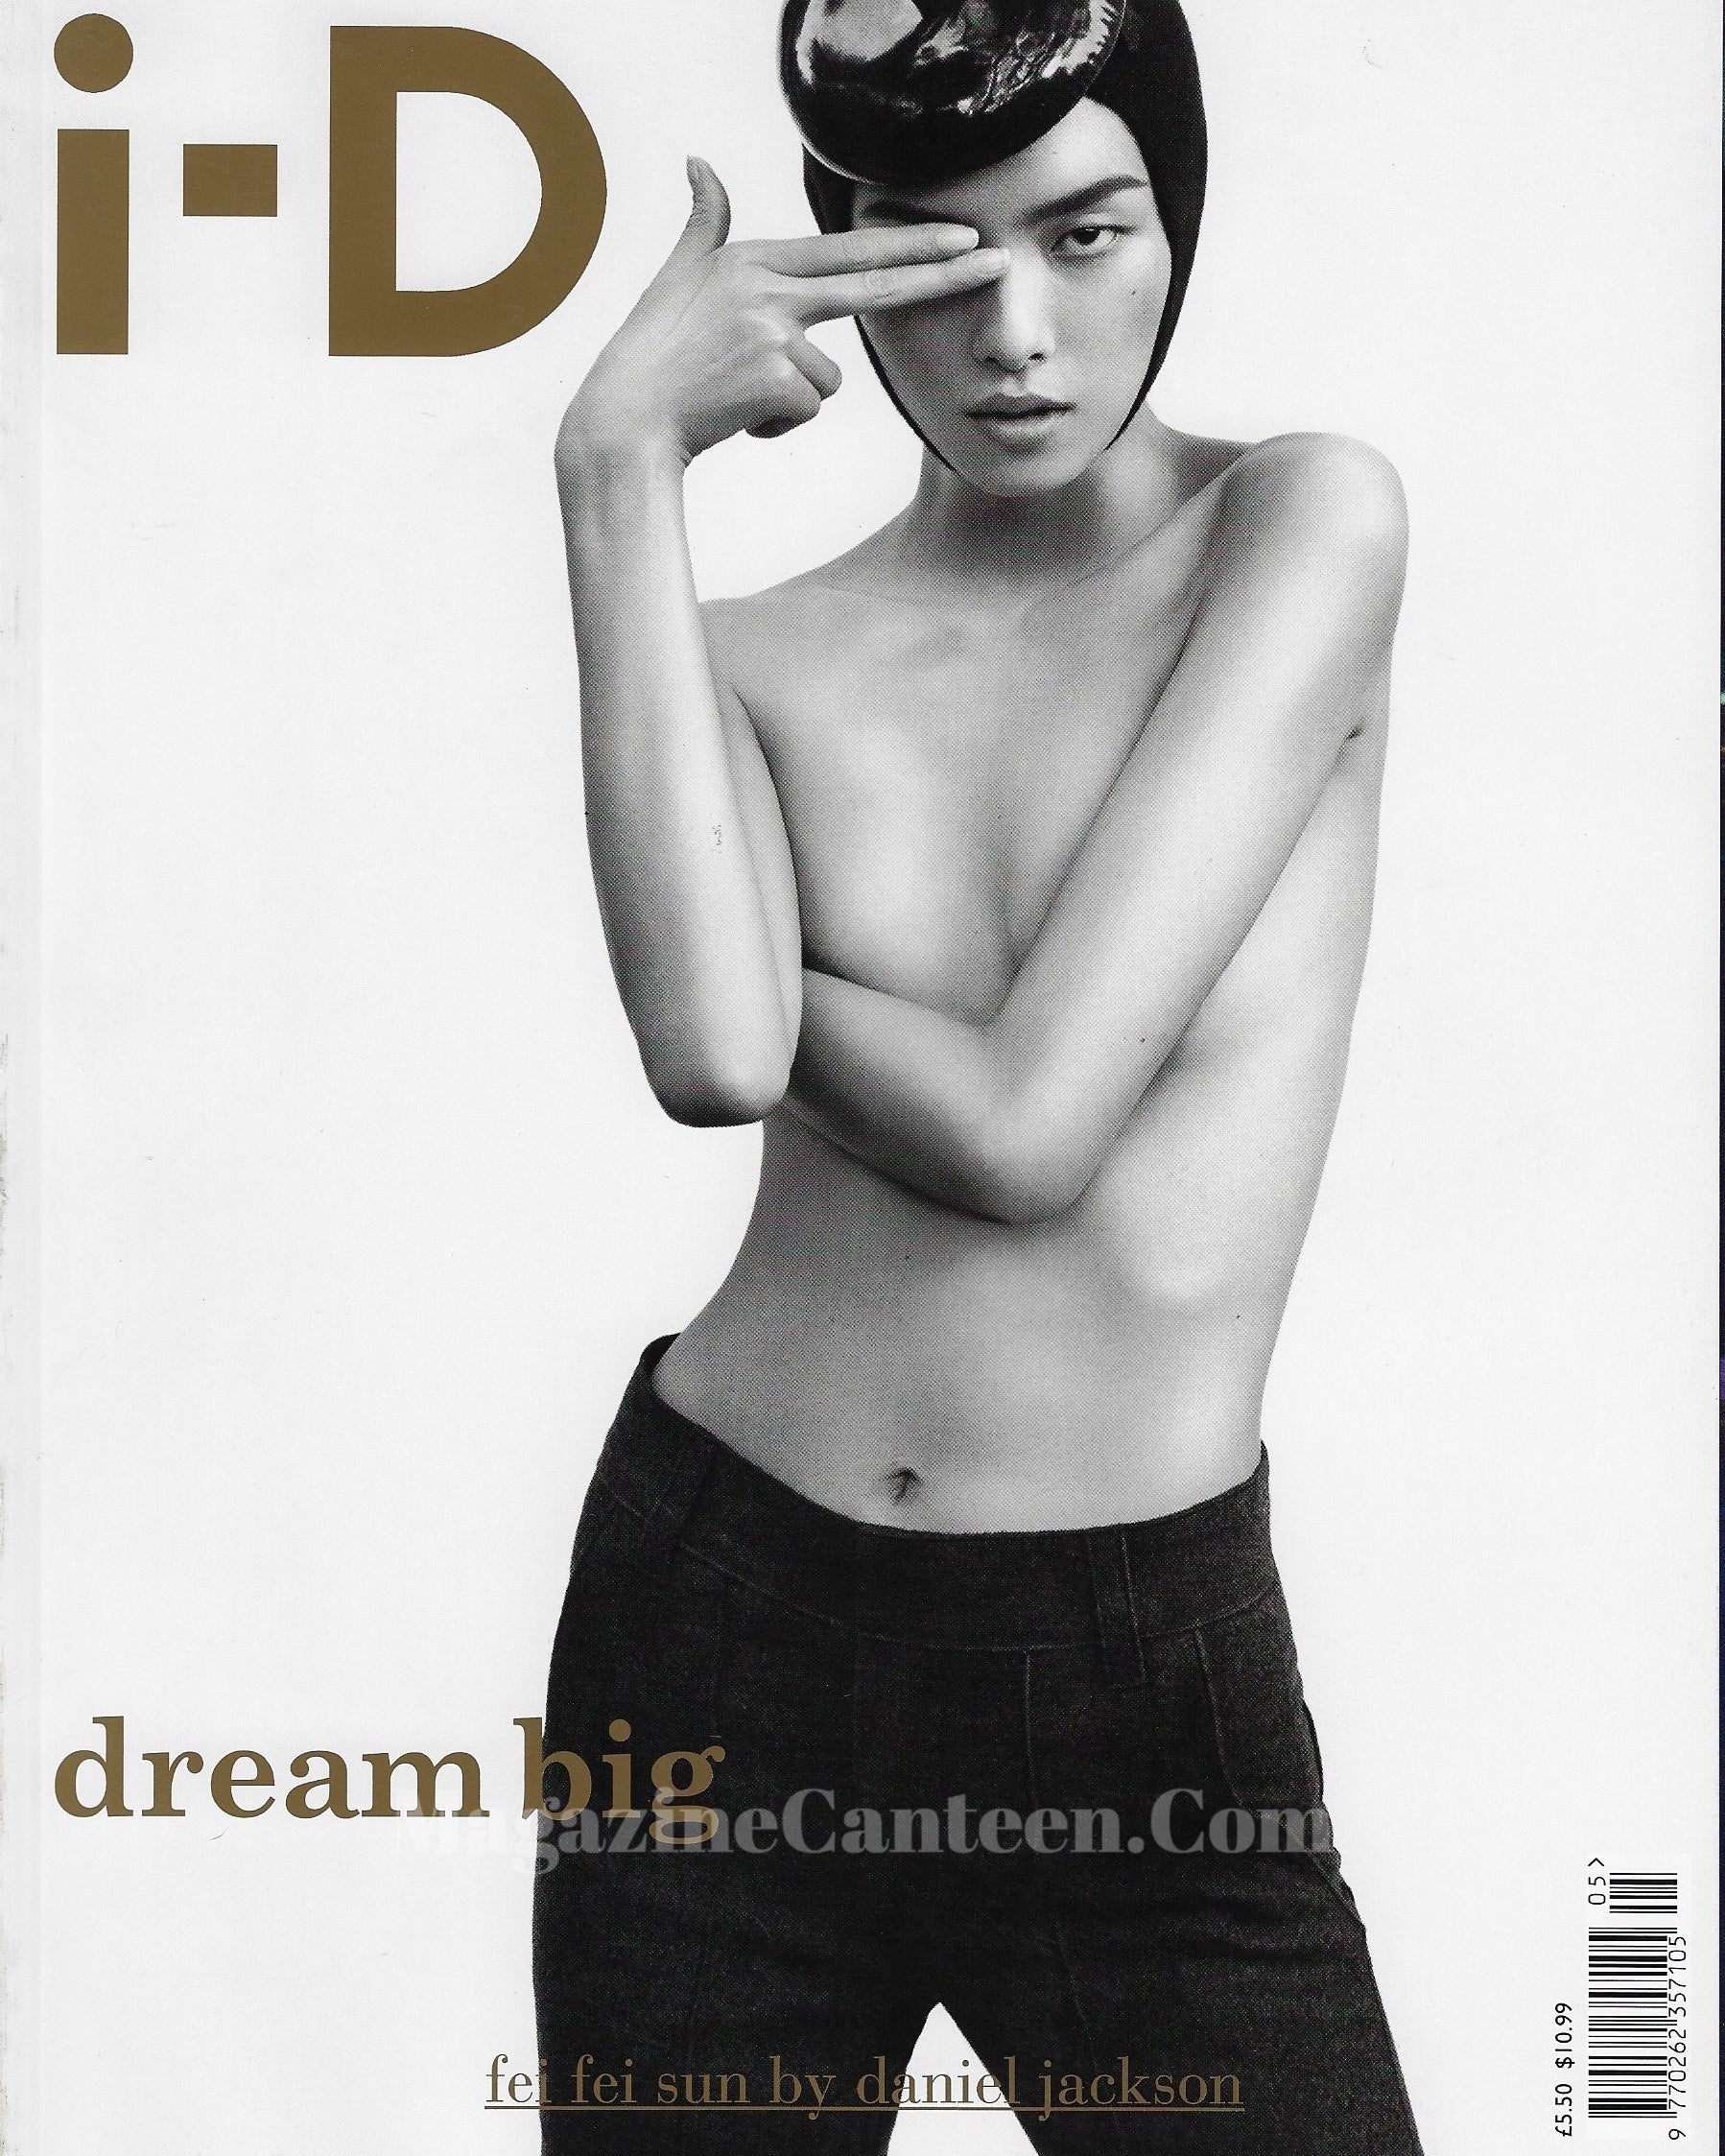 I-D Magazine 315 - Fei Fei Sun 2011